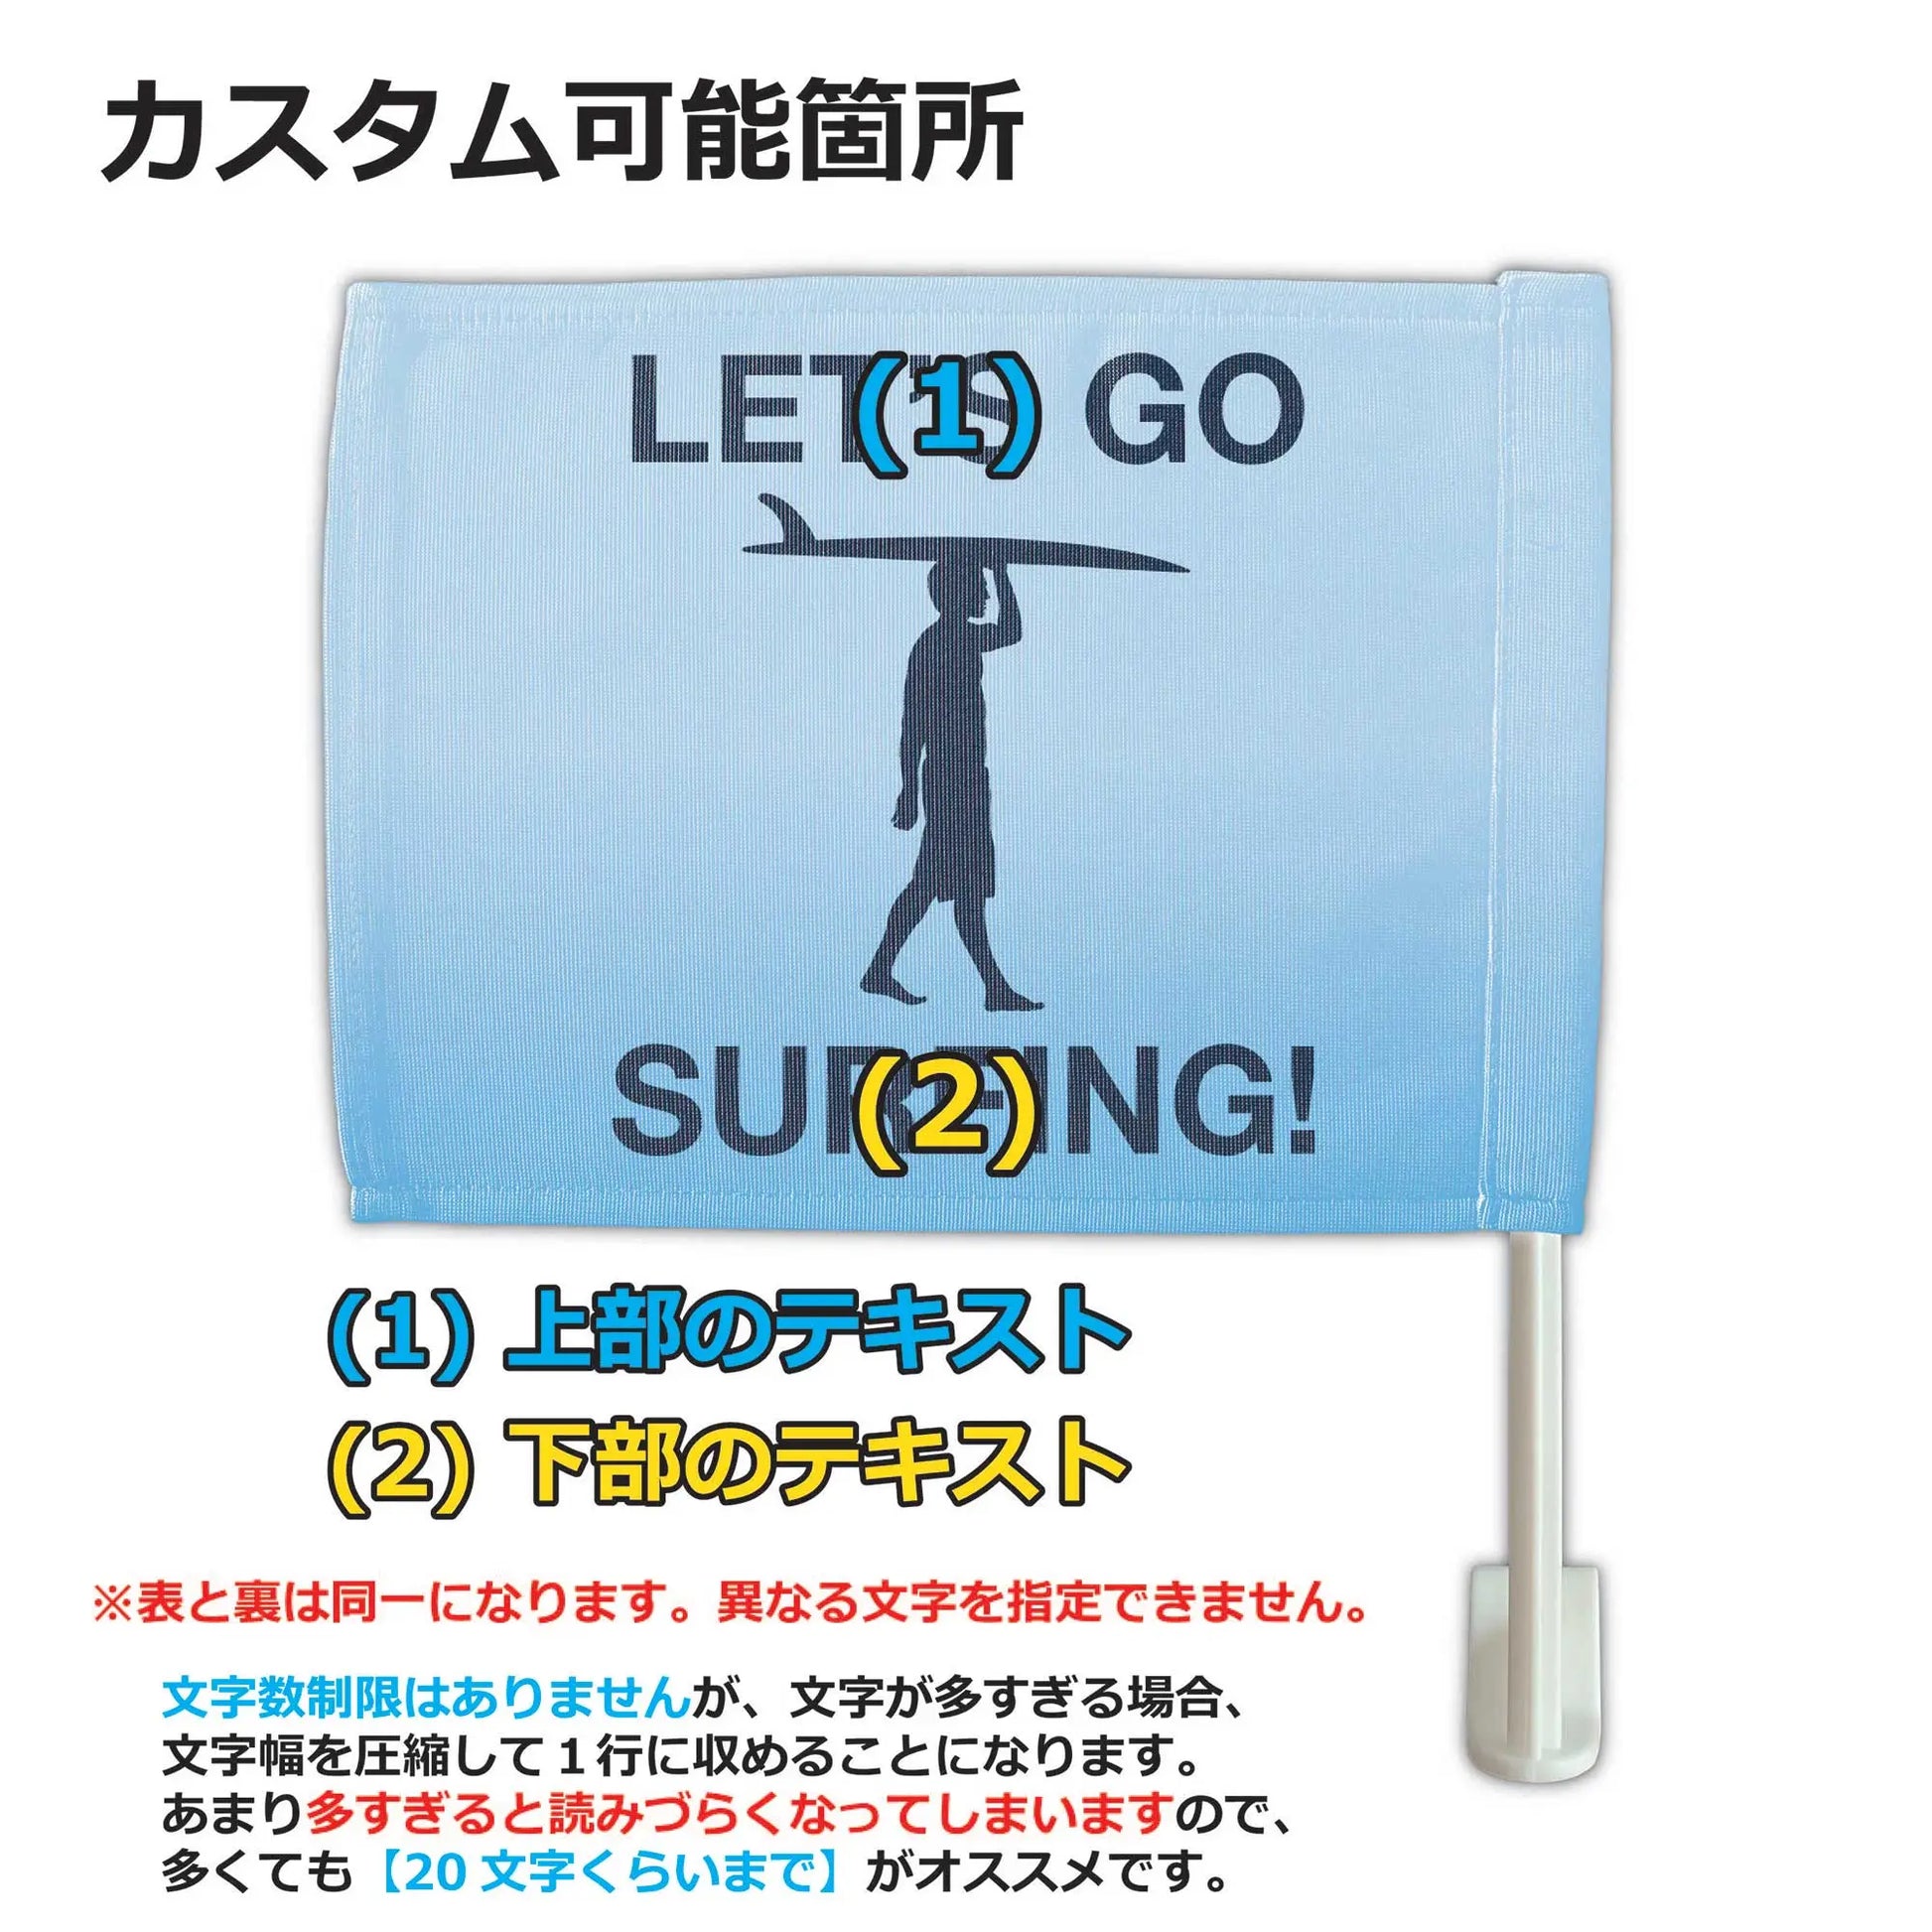 【カーフラッグ】SURF/サーフィン/自動車用オリジナルフラッグ・旗 PL8HERO